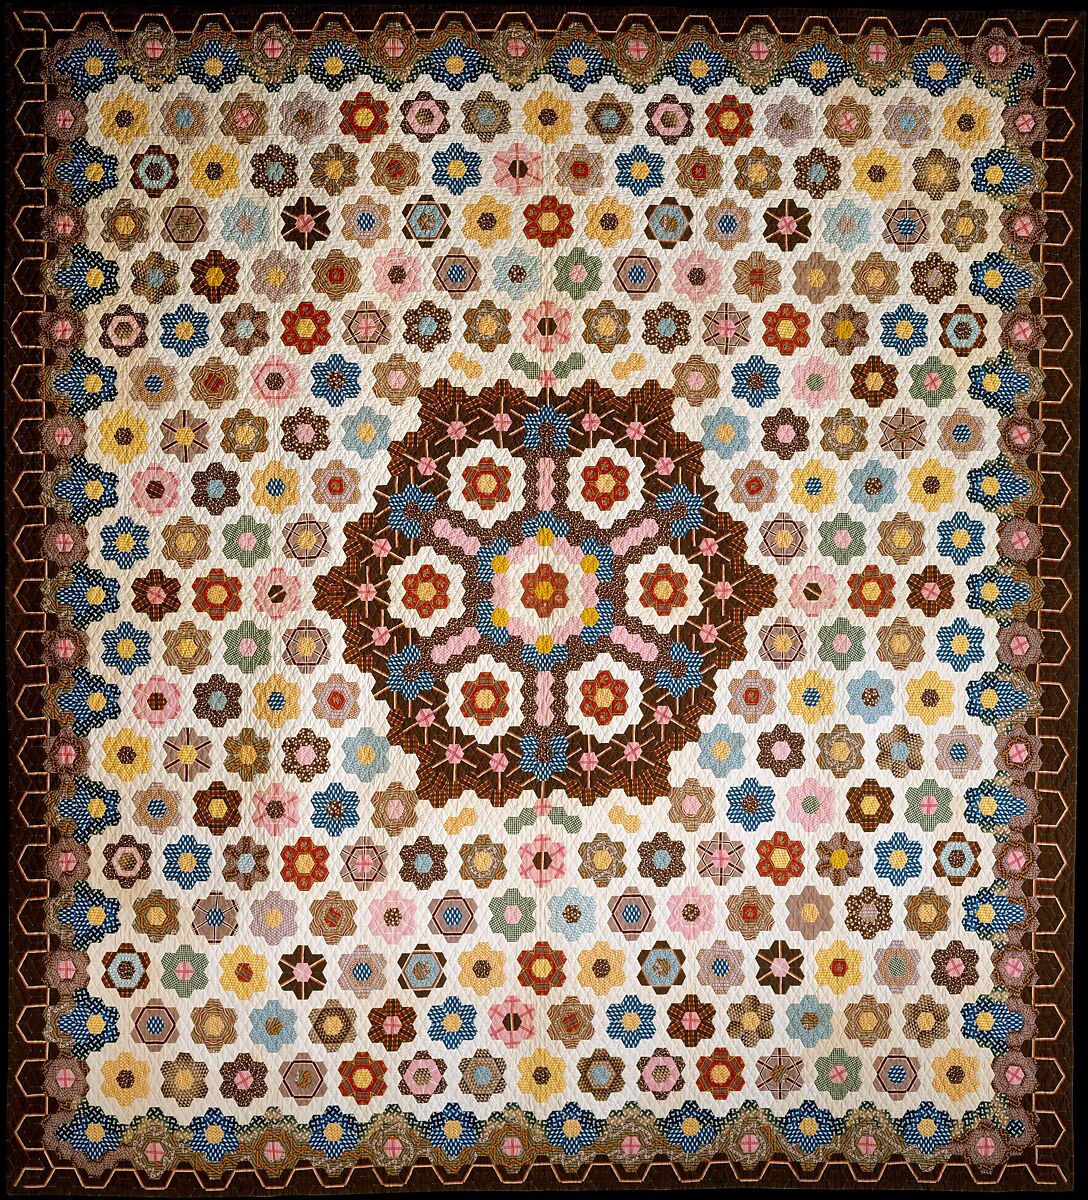 Honeycomb Quilt, Elizabeth Van Horne Clarkson (1771–1852), Cotton, American 